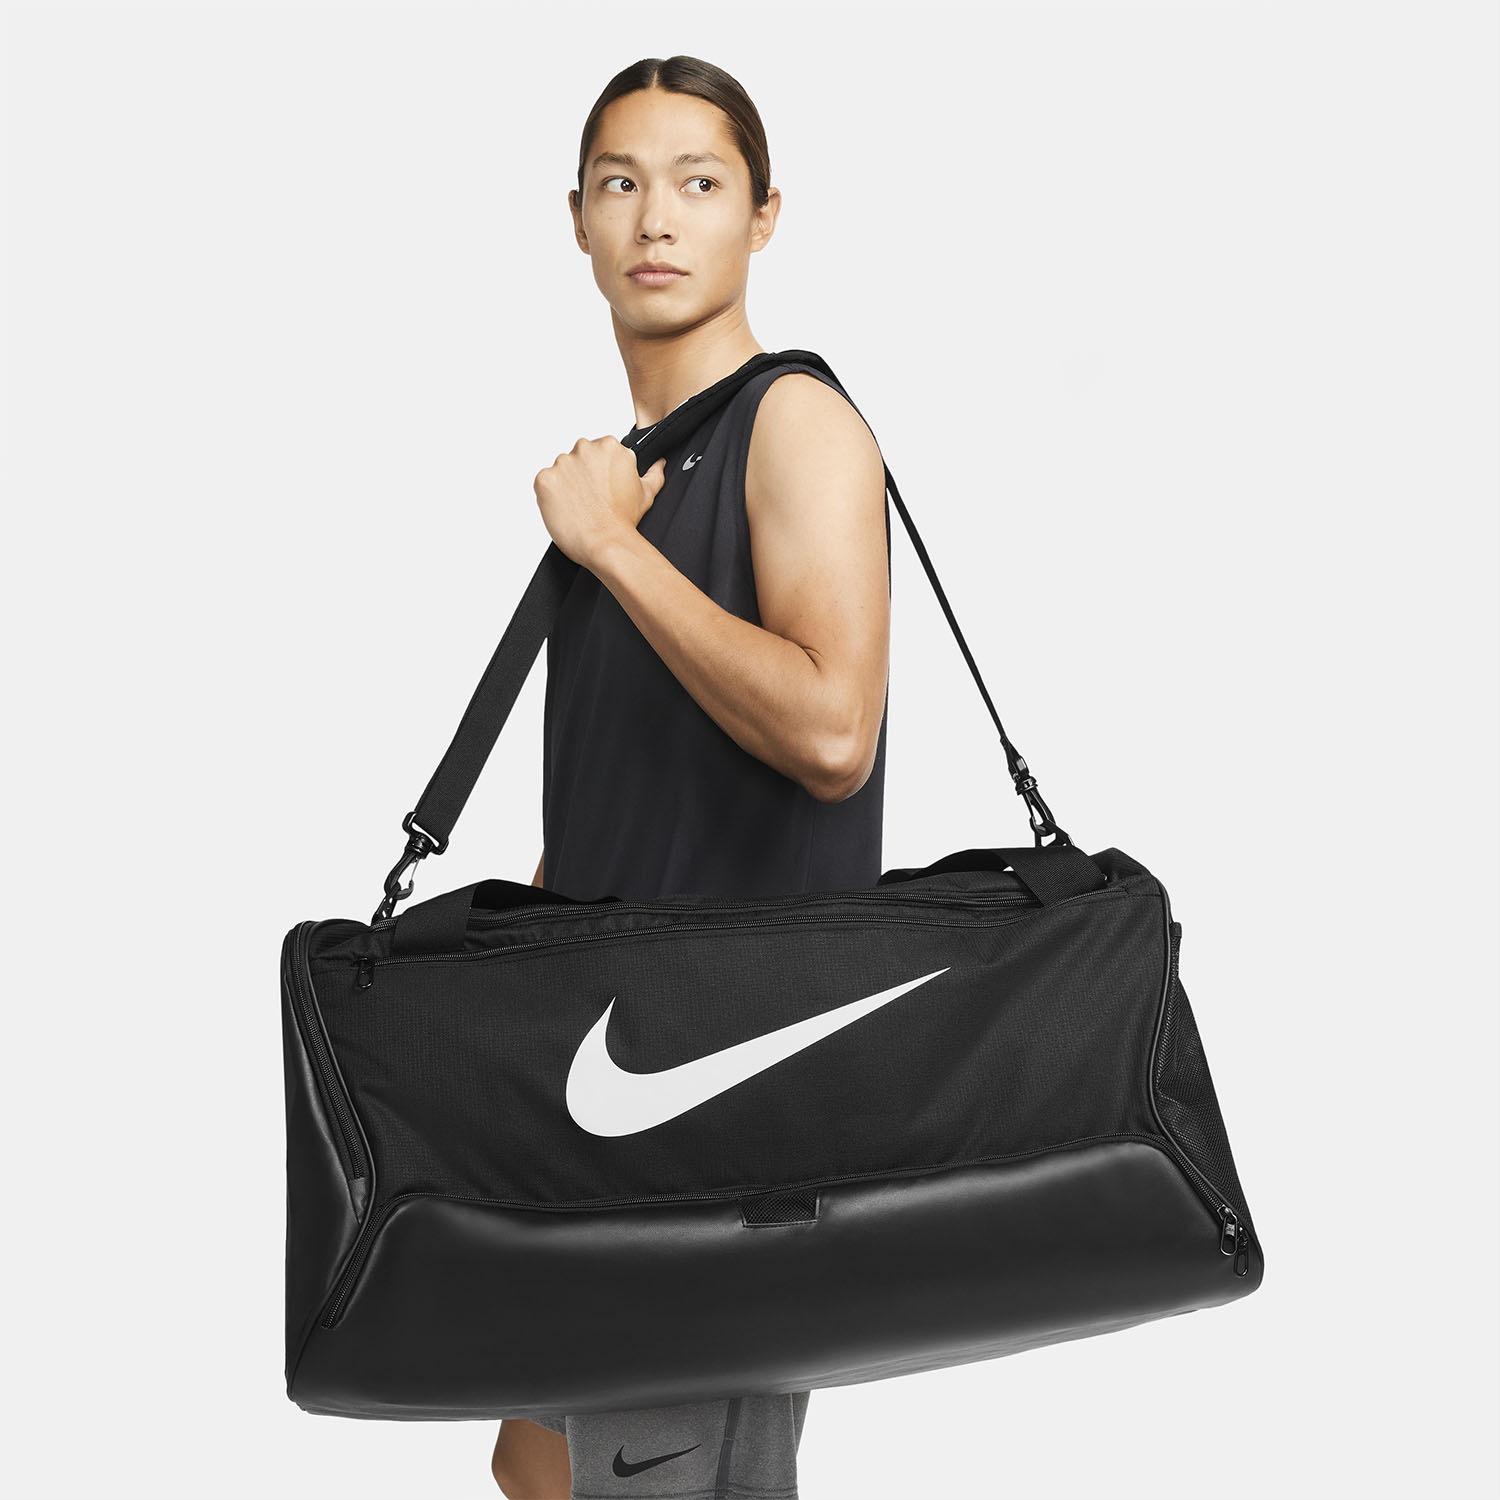 Nike Brasilia 9.5 Training Duffle - Black/White